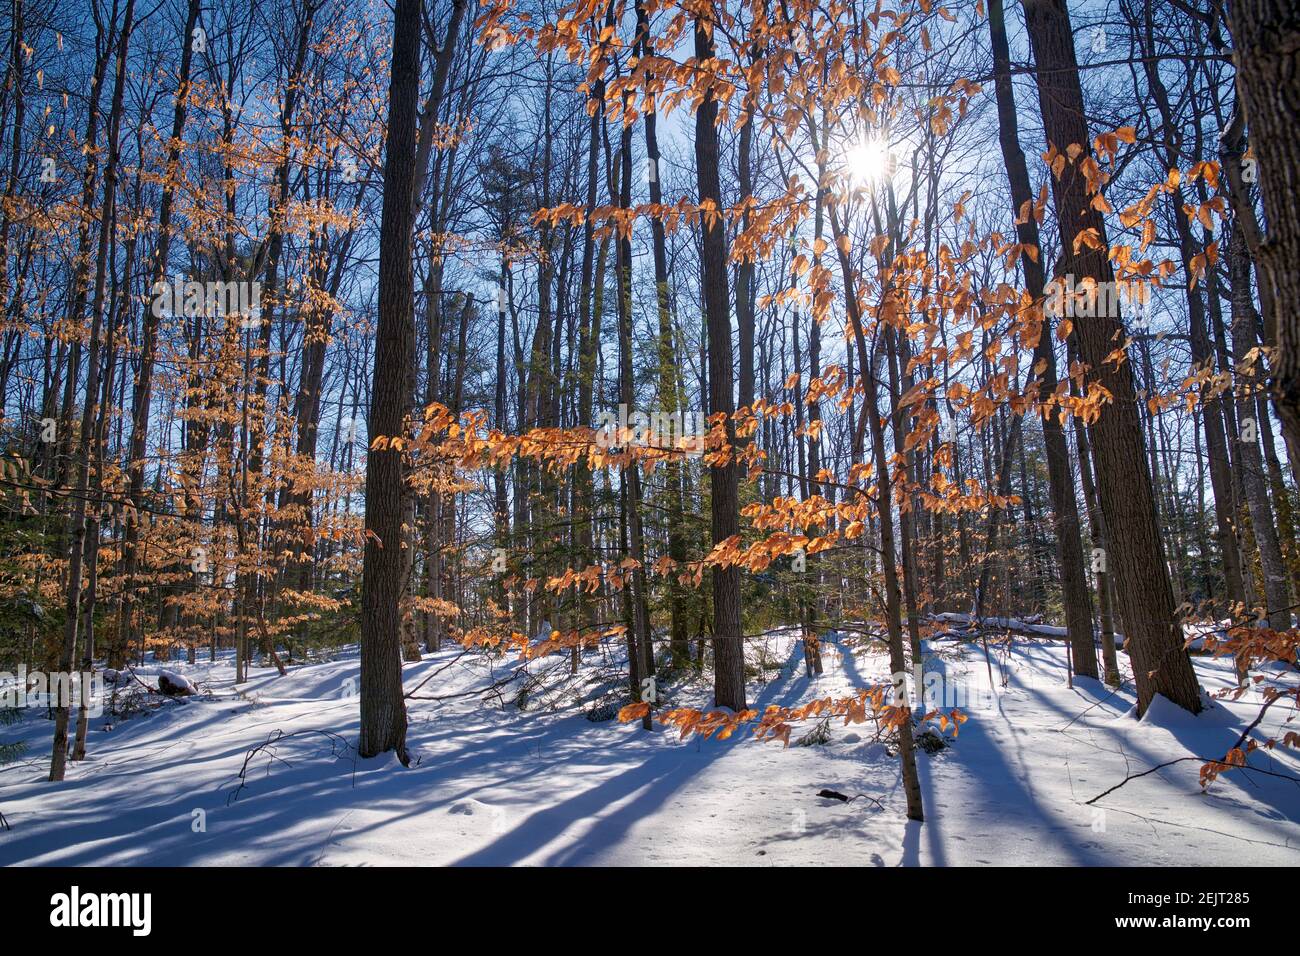 Colore vivace delle foglie di quercia dopo una nevicata nel primo inverno nella foresta. Foto Stock